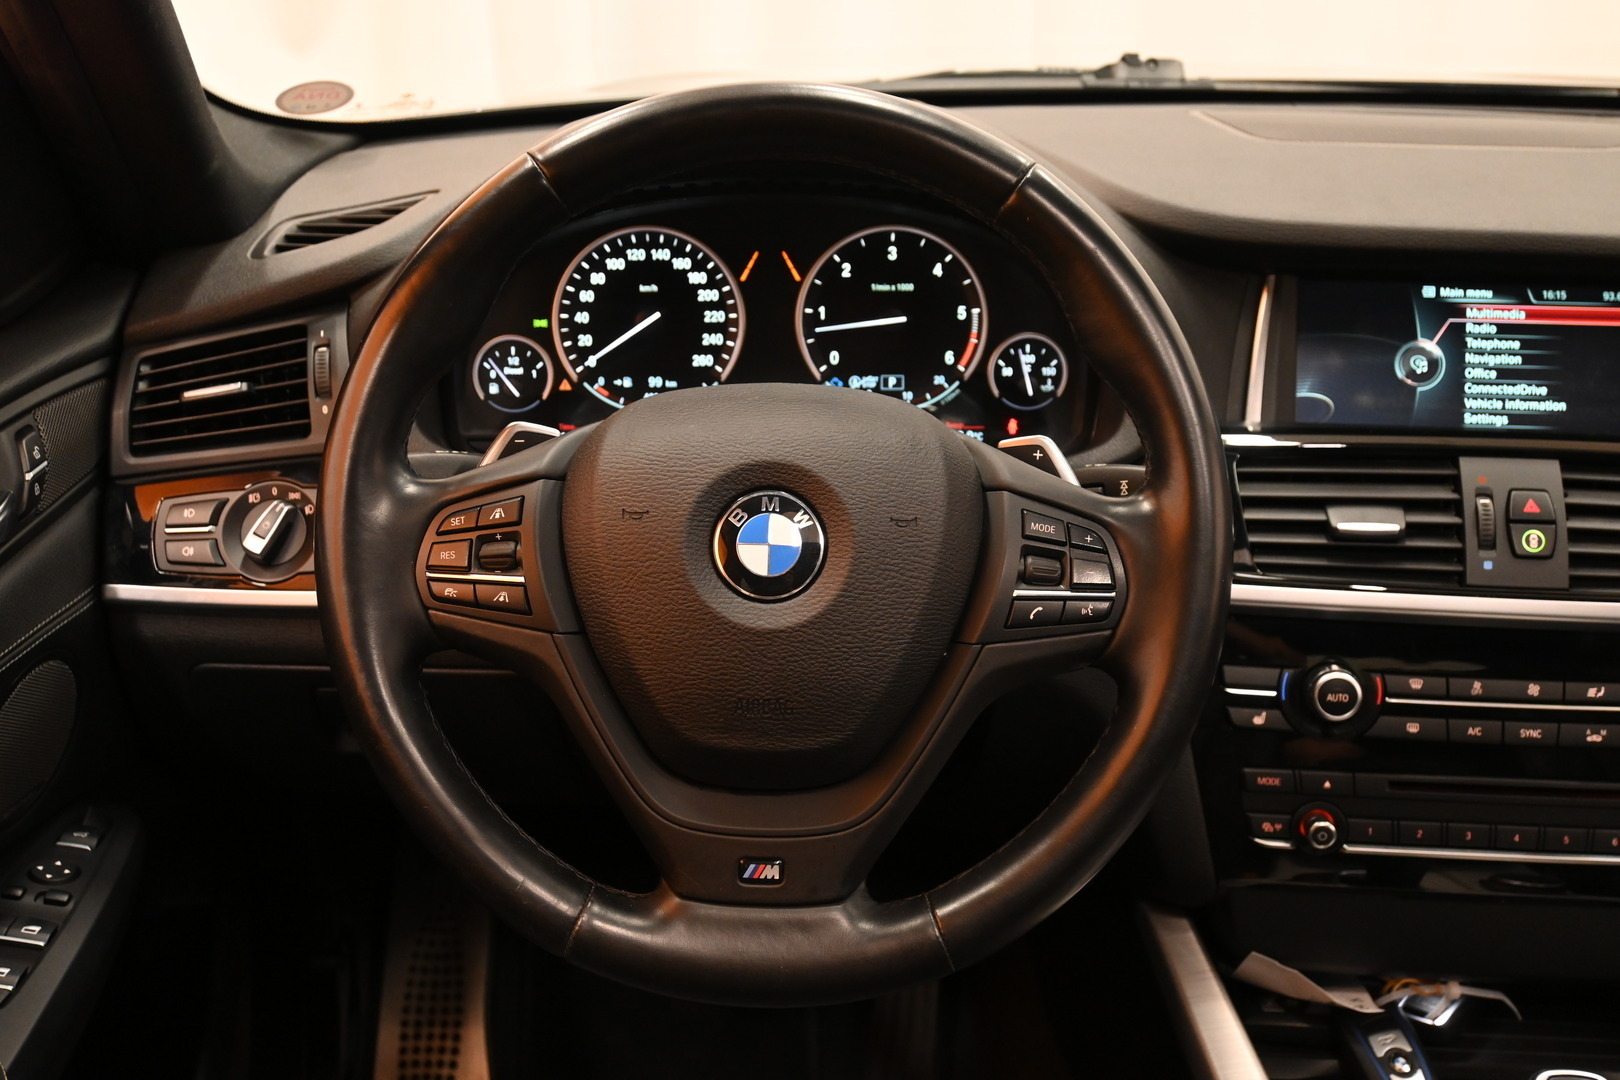 Musta Sedan, BMW X4 – YLB-734